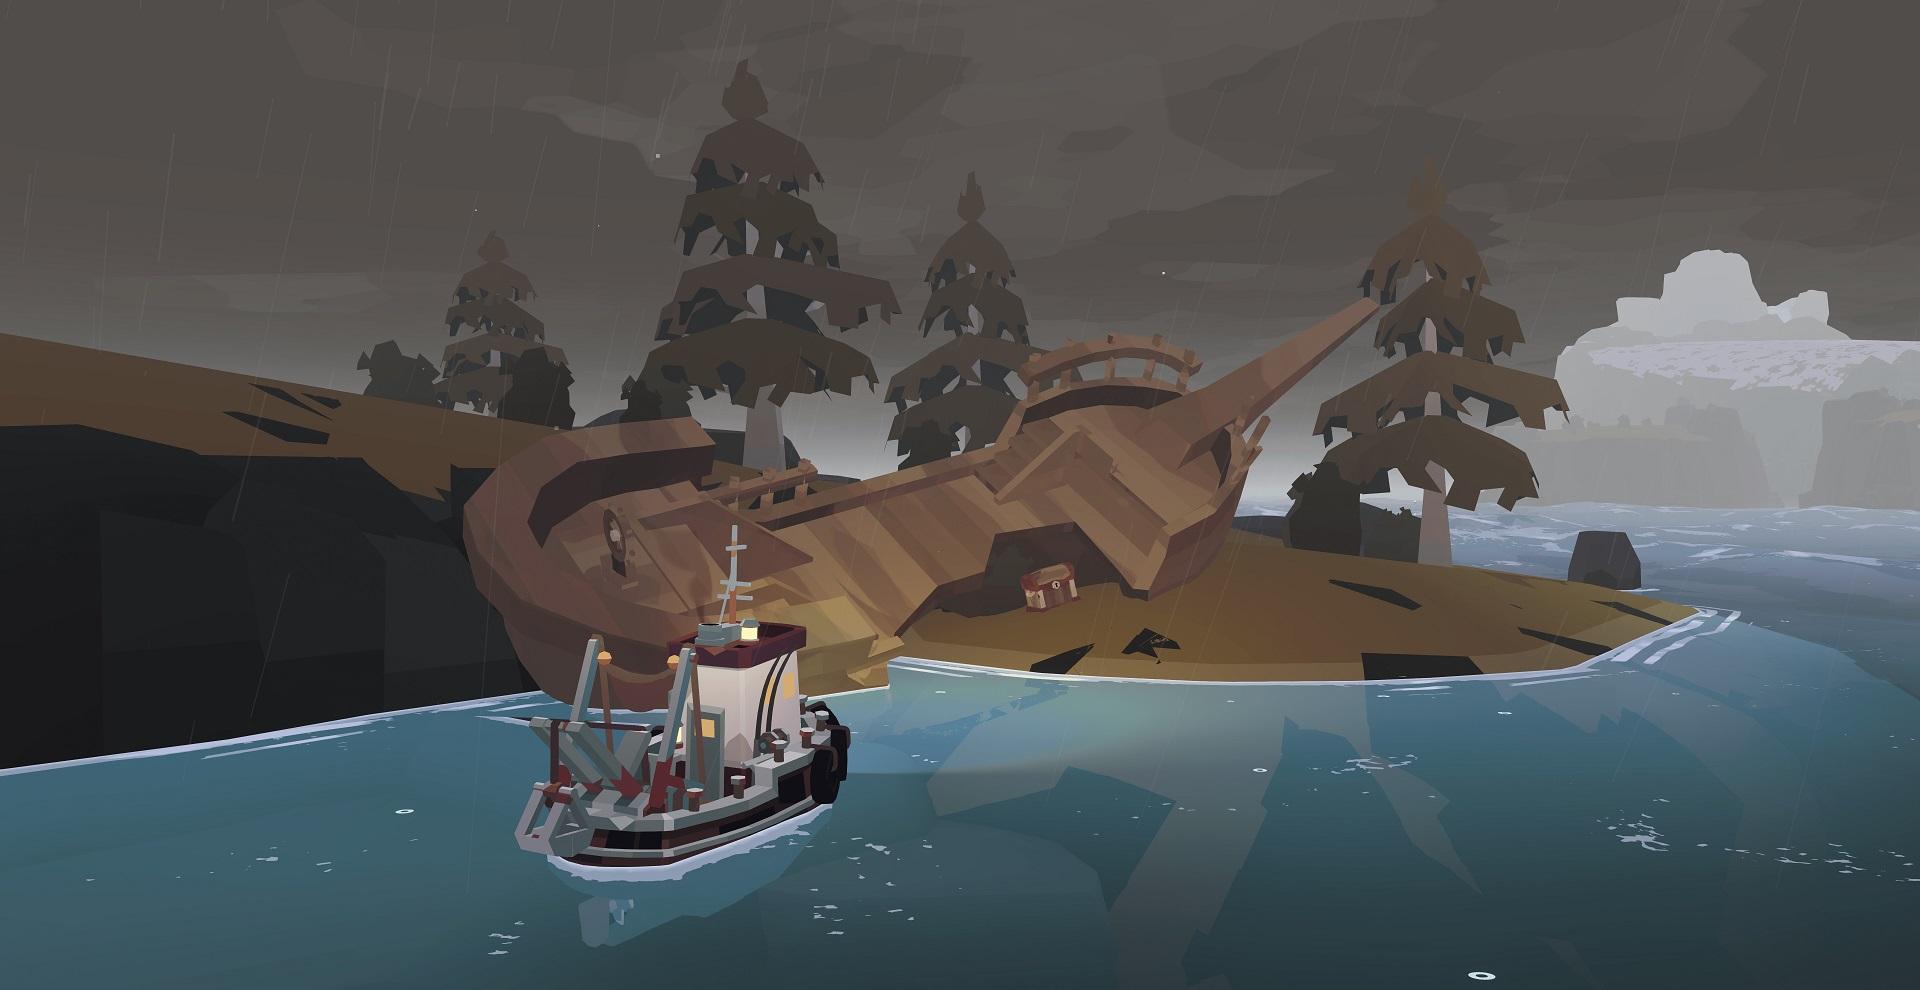 'Dredge' Barco se aproximando de um naufrágio em uma ilha com um baú de tesouro.